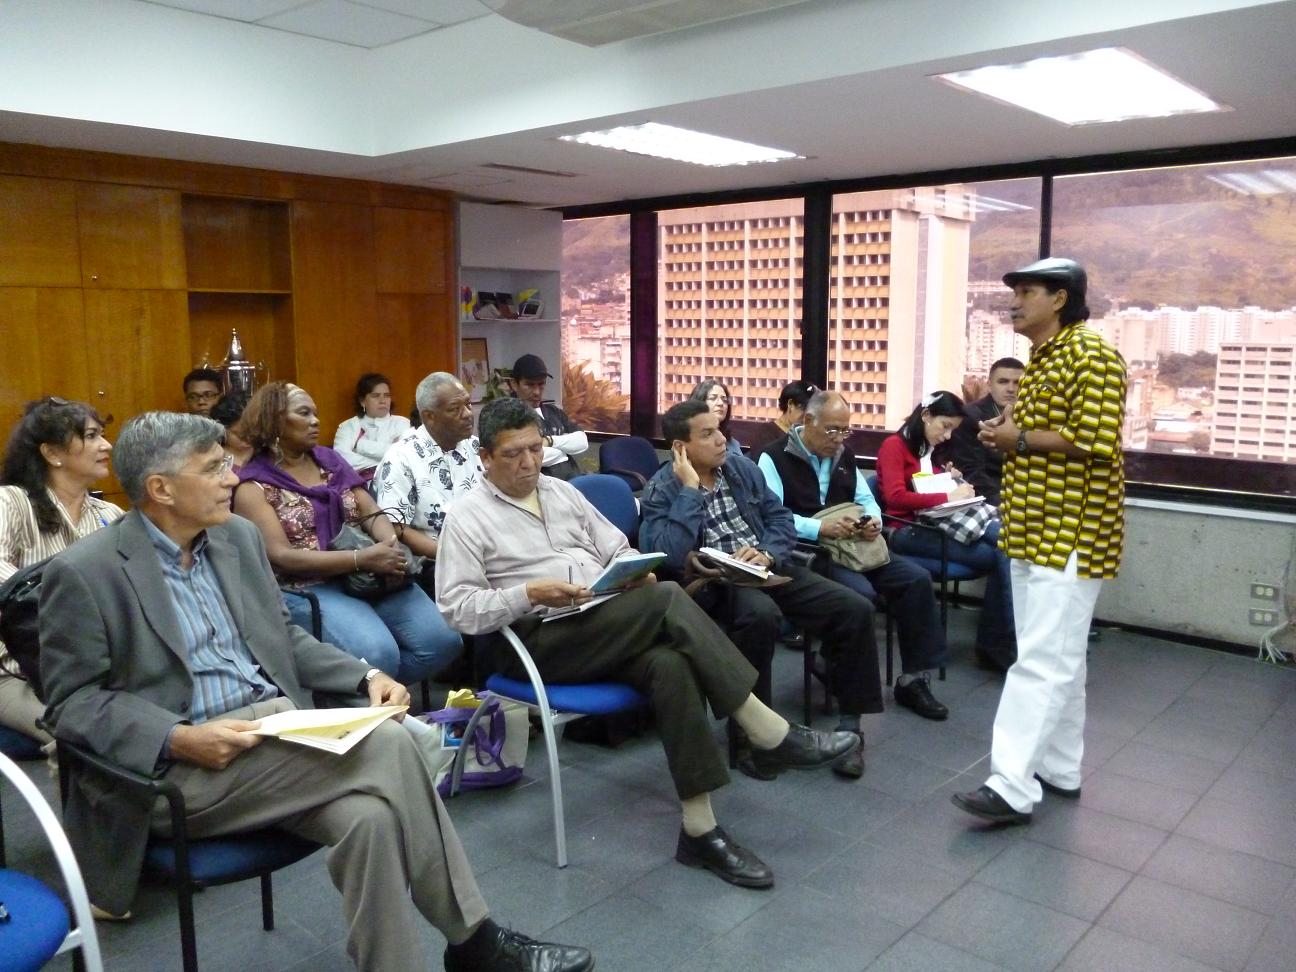 Jesús “Chucho” García lors d’une conférence-débat, Caracas.